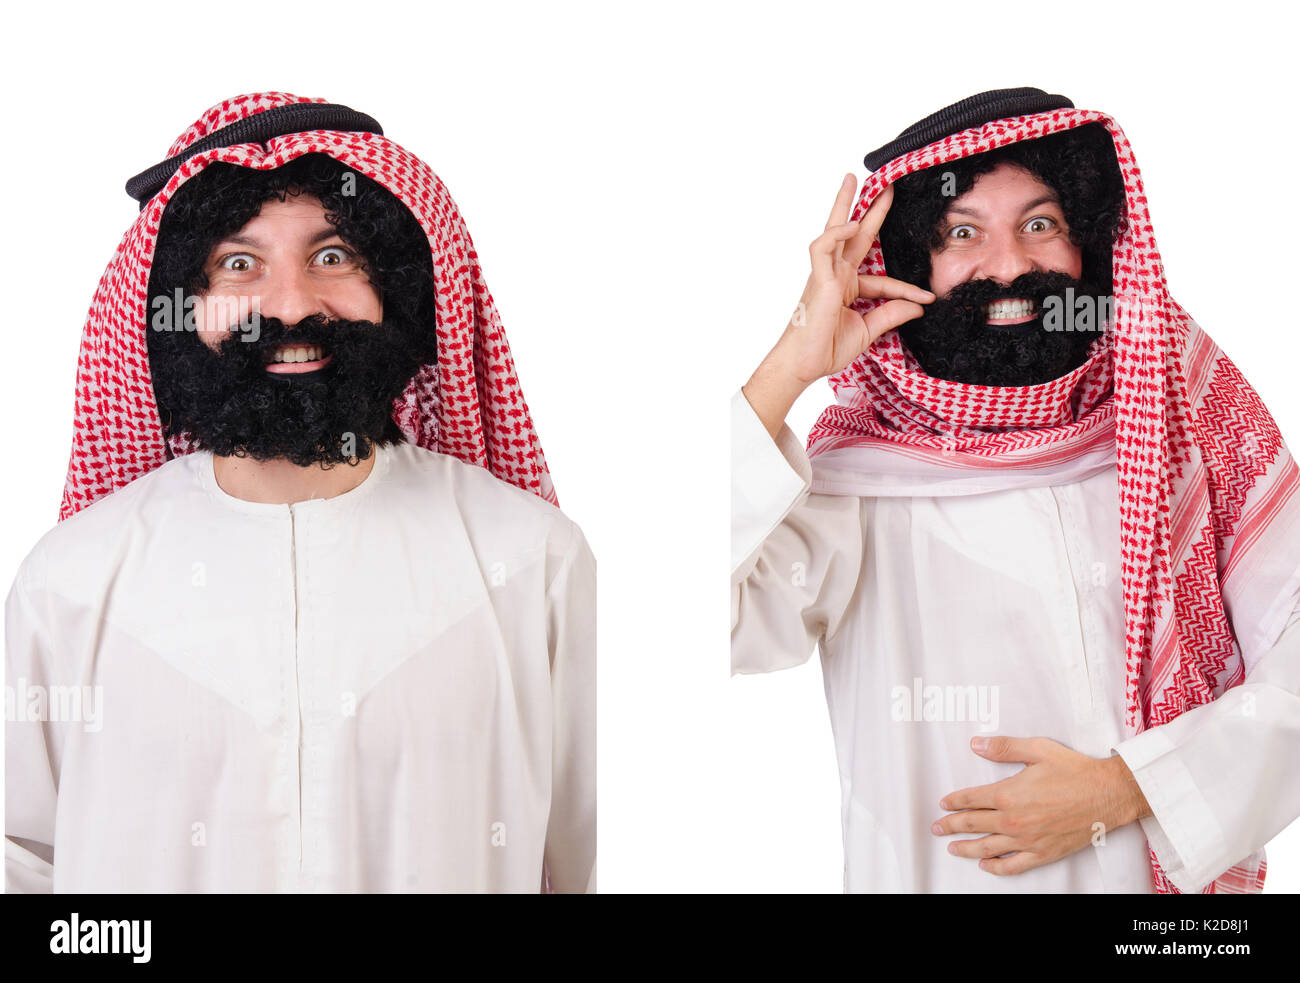 Bearded arab isolated on white background Stock Photo - Alamy